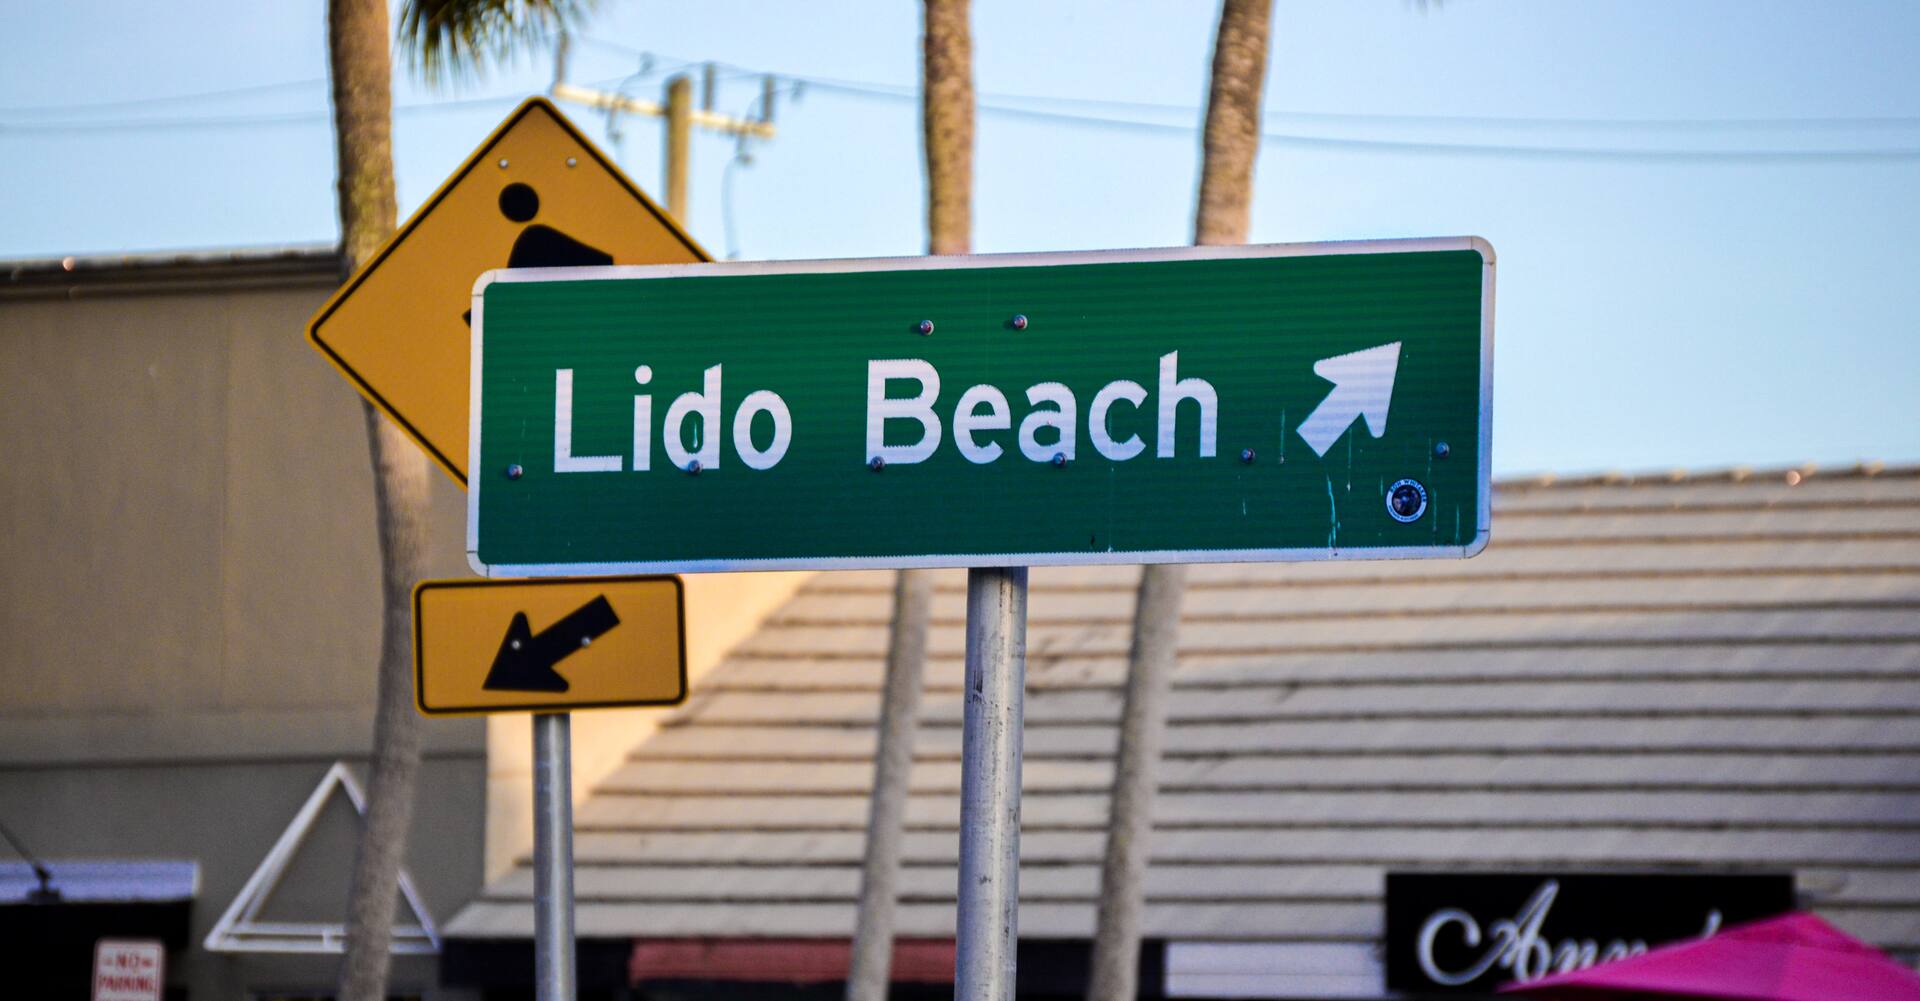 Lido Beach sign in St Armands Cir, Sarasota, FL, USA